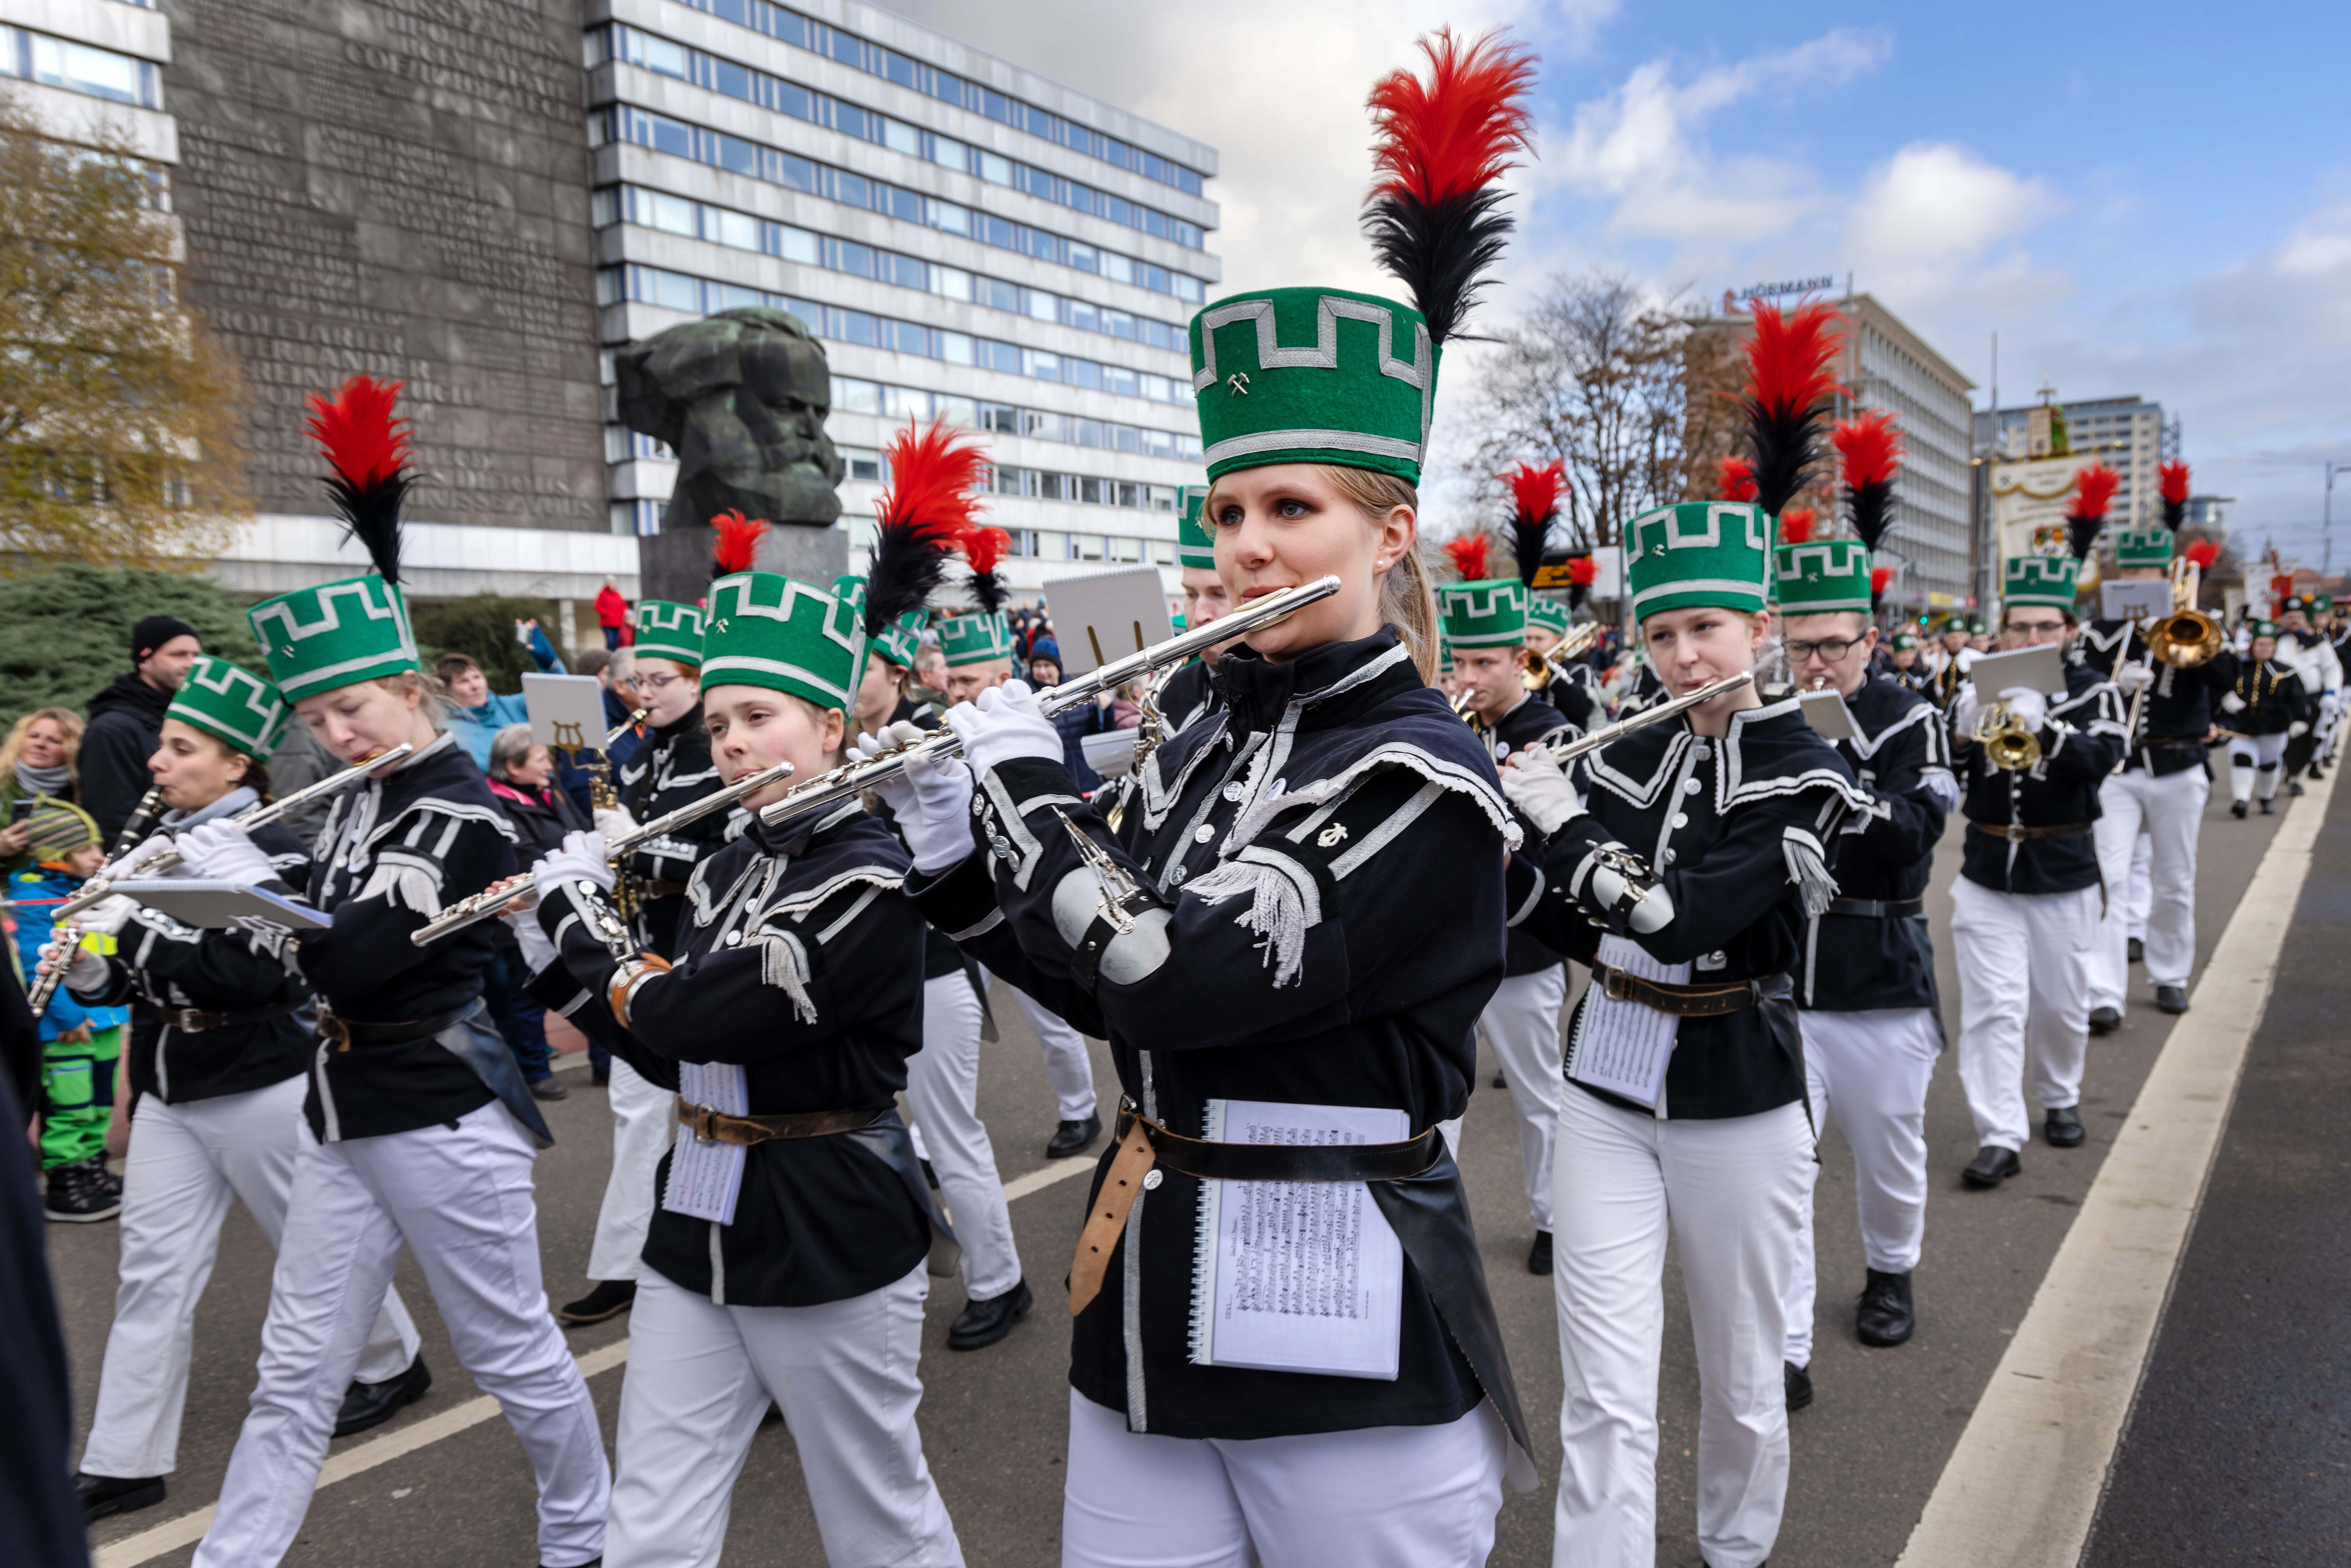 Nach zwei Jahren pandemiebedingter Pause gab es endlich wieder eine Bergparade in Chemnitz. Rund 980 Teilnehmerinnen und Teilnehmer präsentierten die Tradition. Sie zogen durch die Innenstadt und gaben ein Konzert auf dem Theaterplatz.